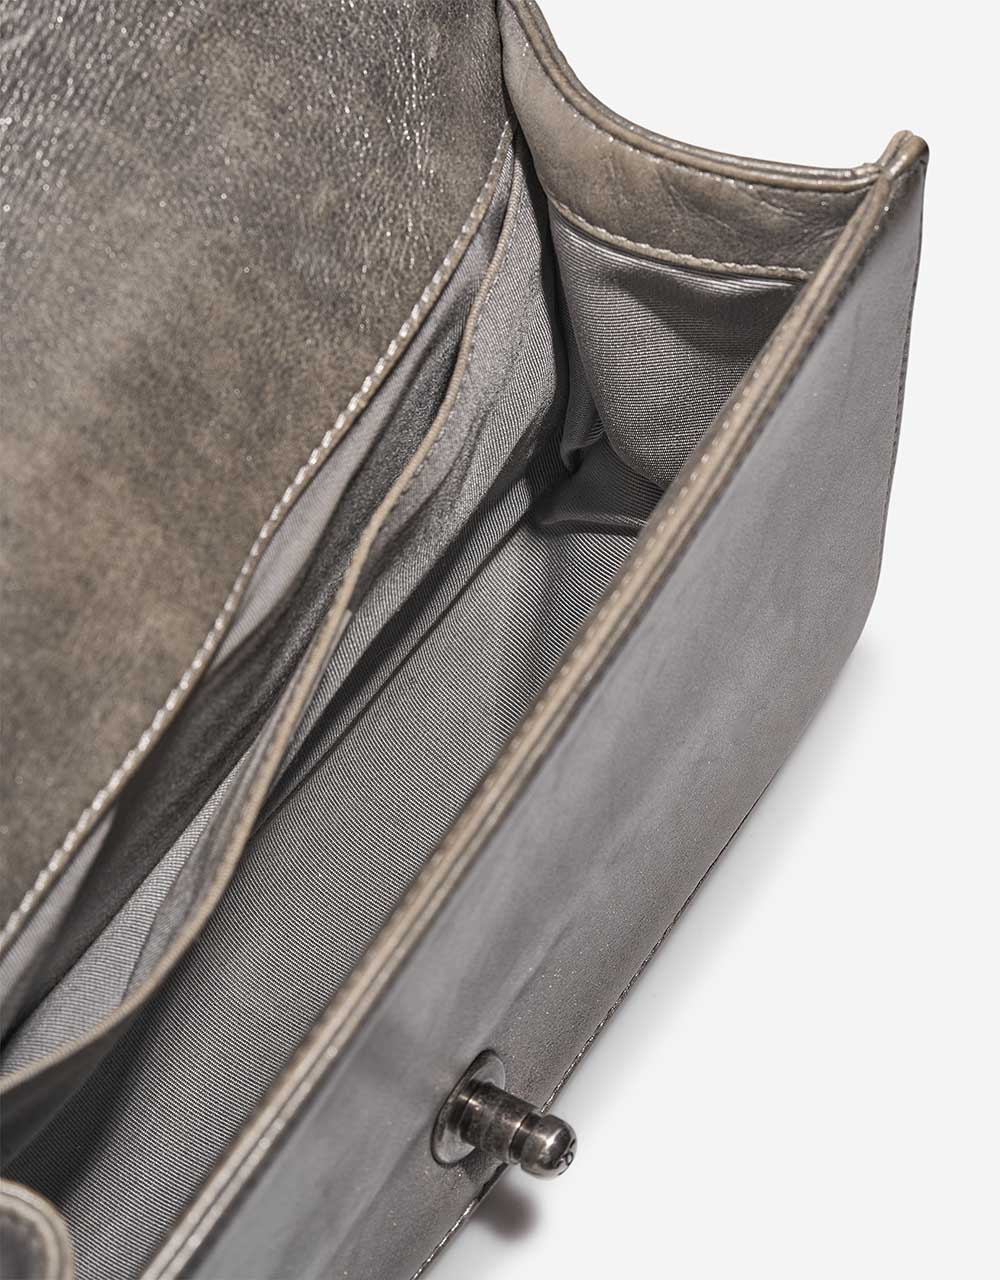 Chanel Boy NewMedium Silver Inside  | Sell your designer bag on Saclab.com